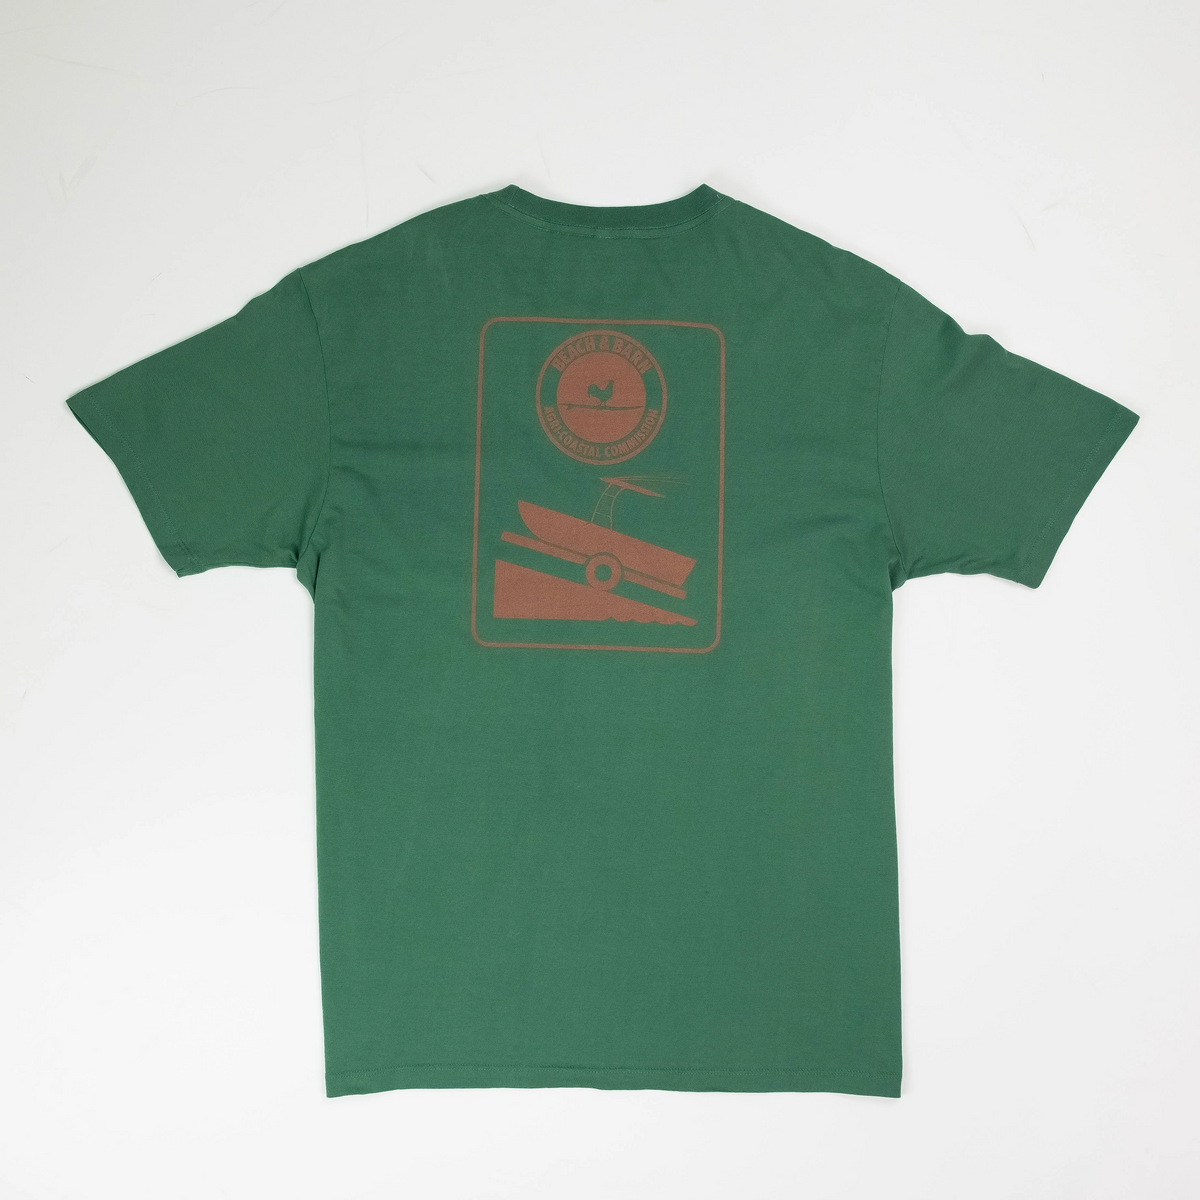 Sale - Agri-Coastal Commission Tee Shirt